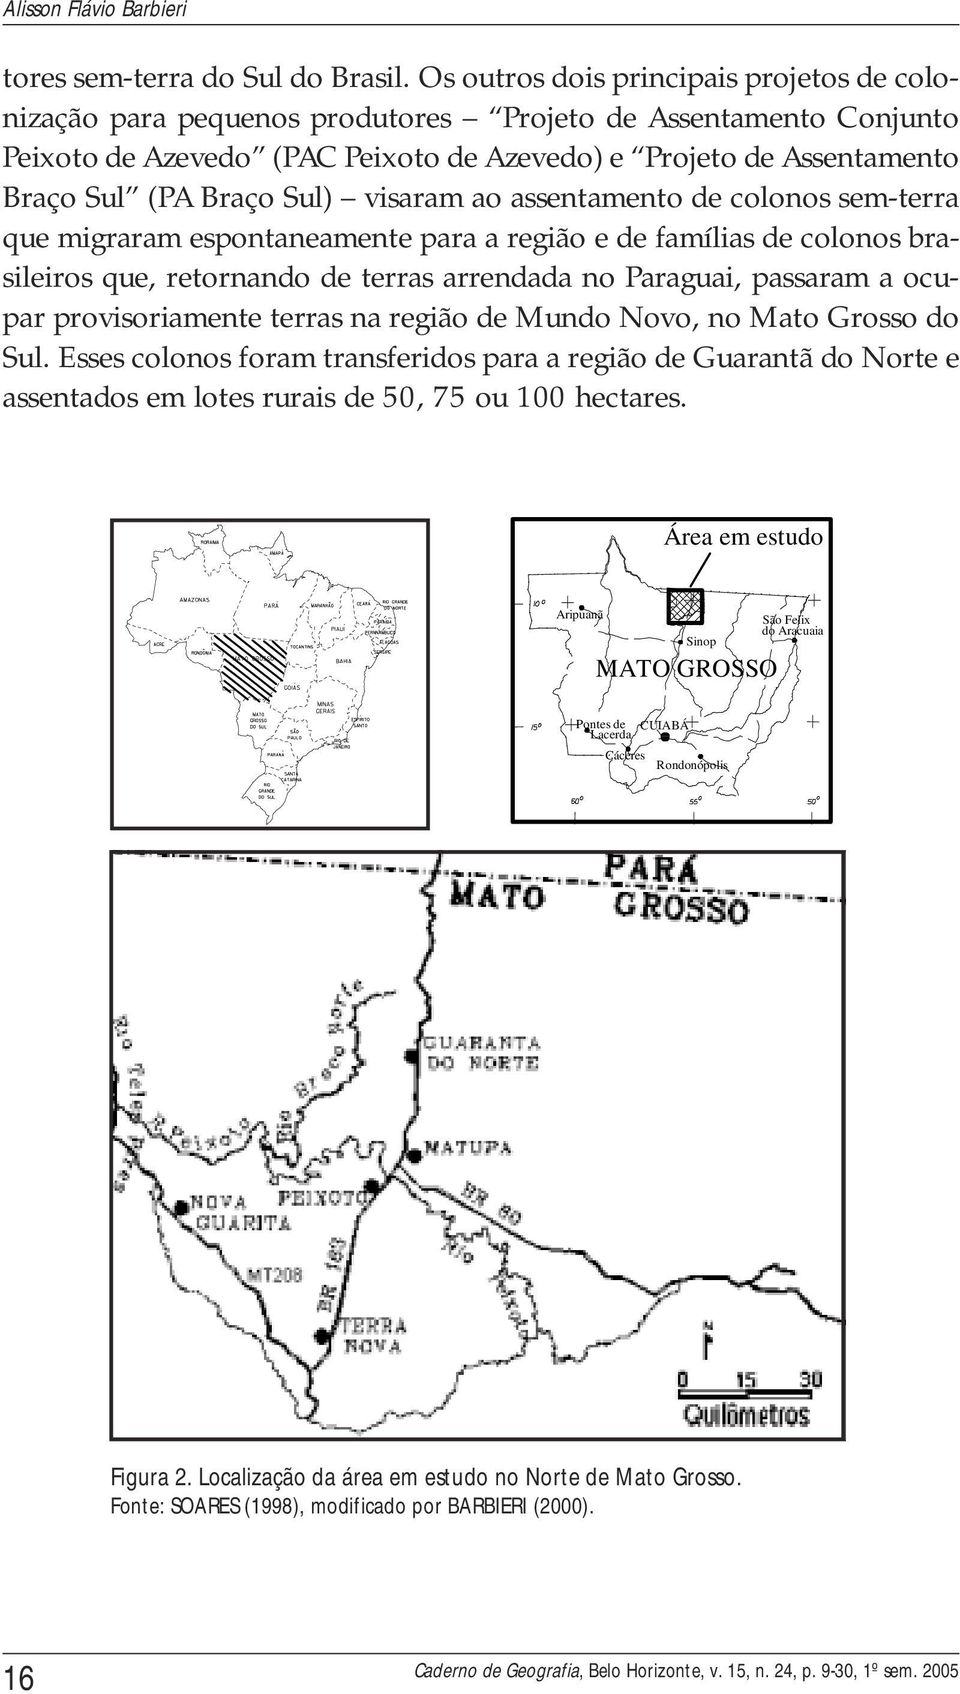 Sul) visaram ao assentamento de colonos sem-terra que migraram espontaneamente para a região e de famílias de colonos brasileiros que, retornando de terras arrendada no Paraguai, passaram a ocupar